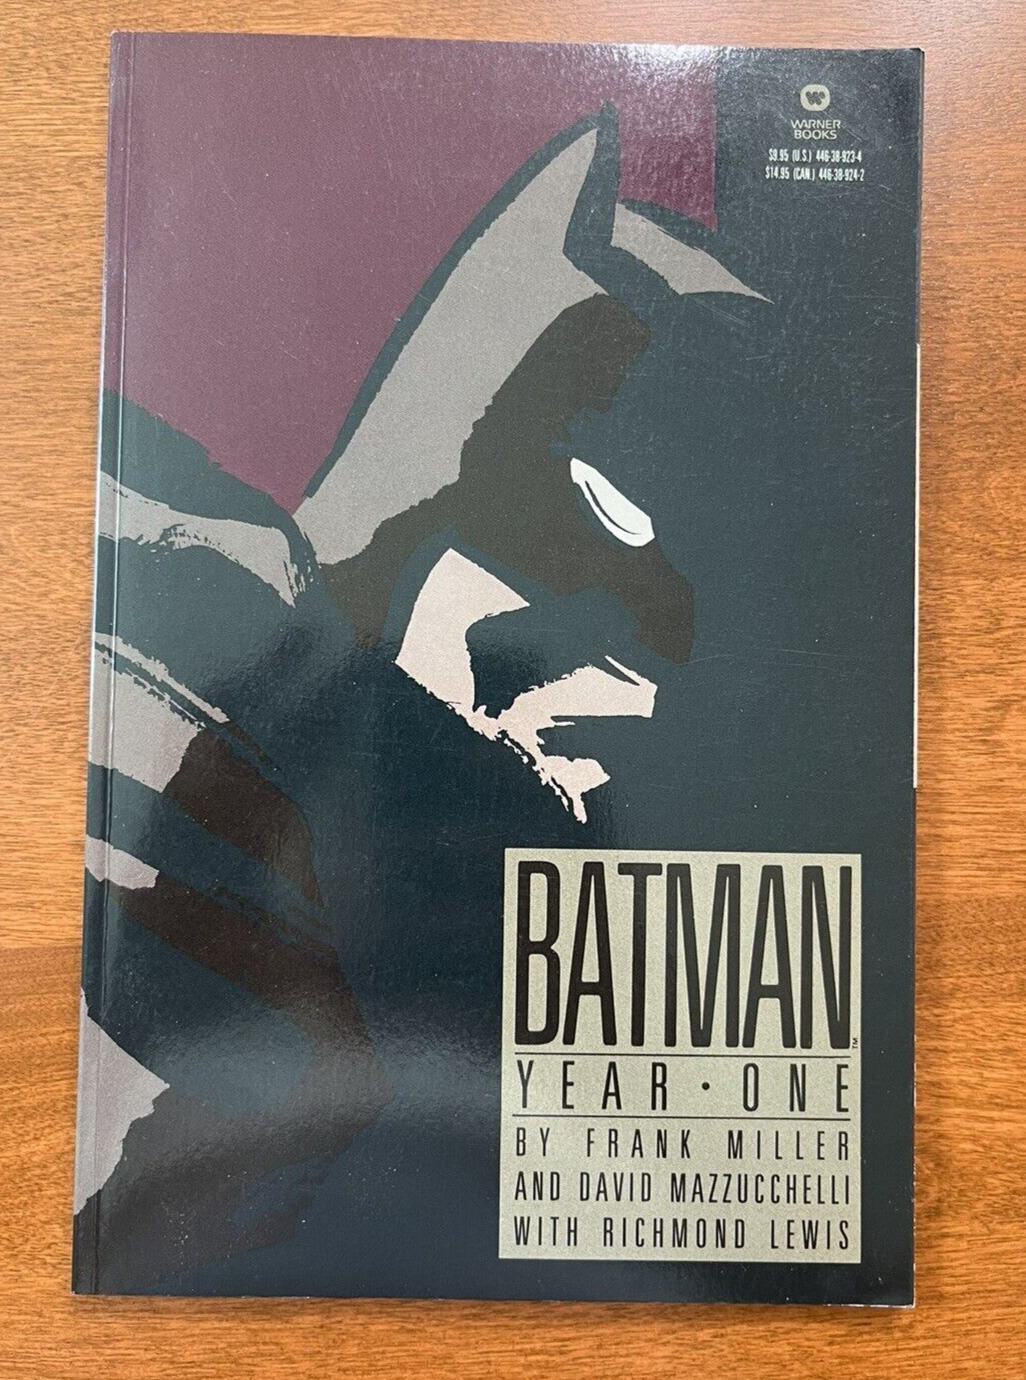 Batman Year One, Frank Miller, August 1988, first print, Near mint